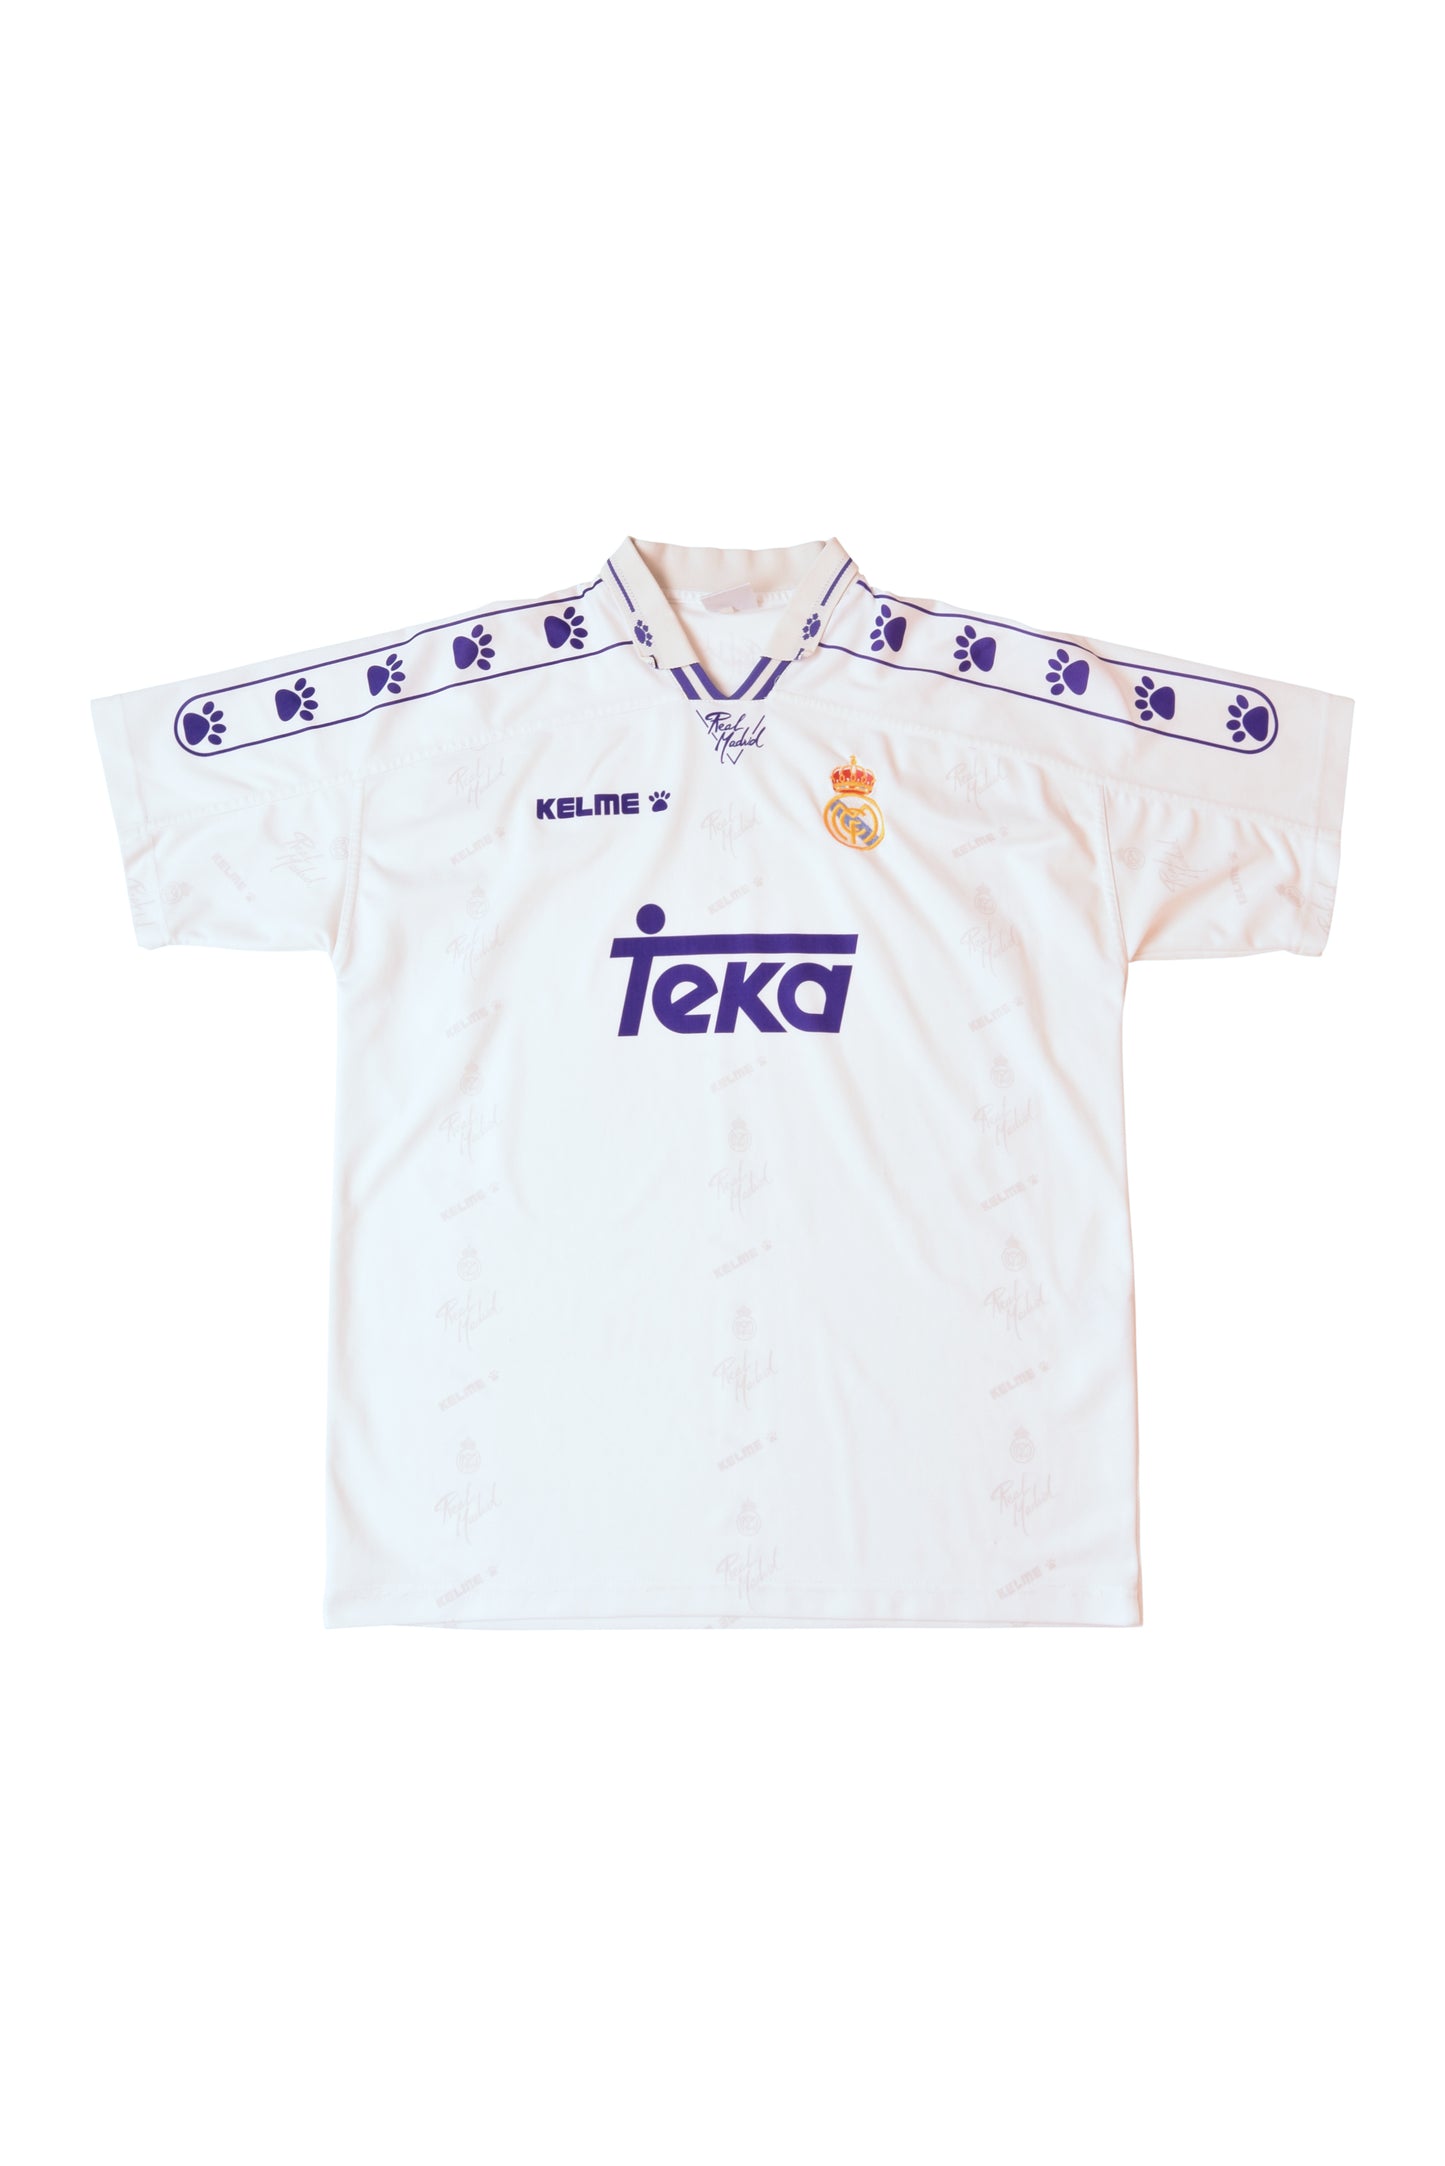 Vintage Real Madrid Kelme Football Shirt '94-'96 Home White Teka Size M-L